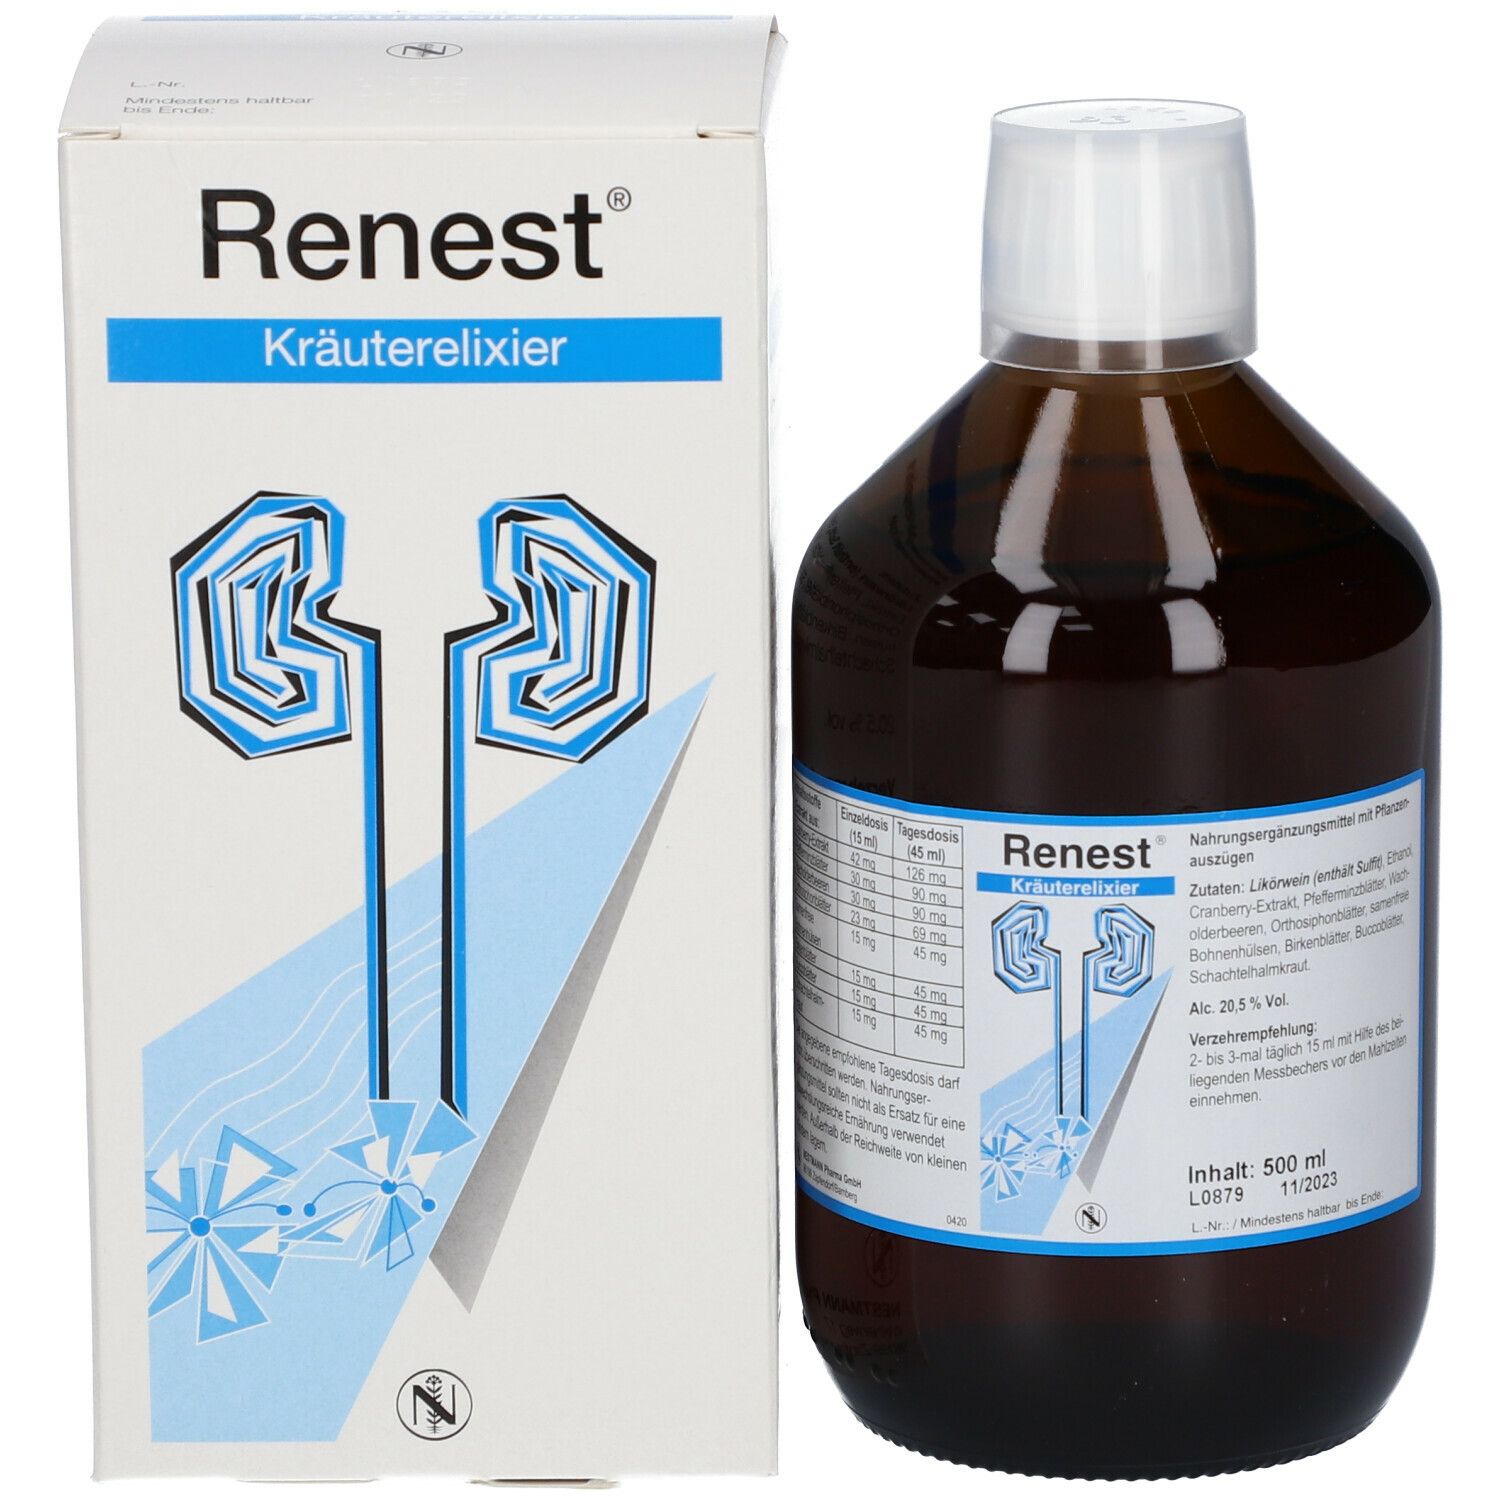 Renest® Kräuterelixier